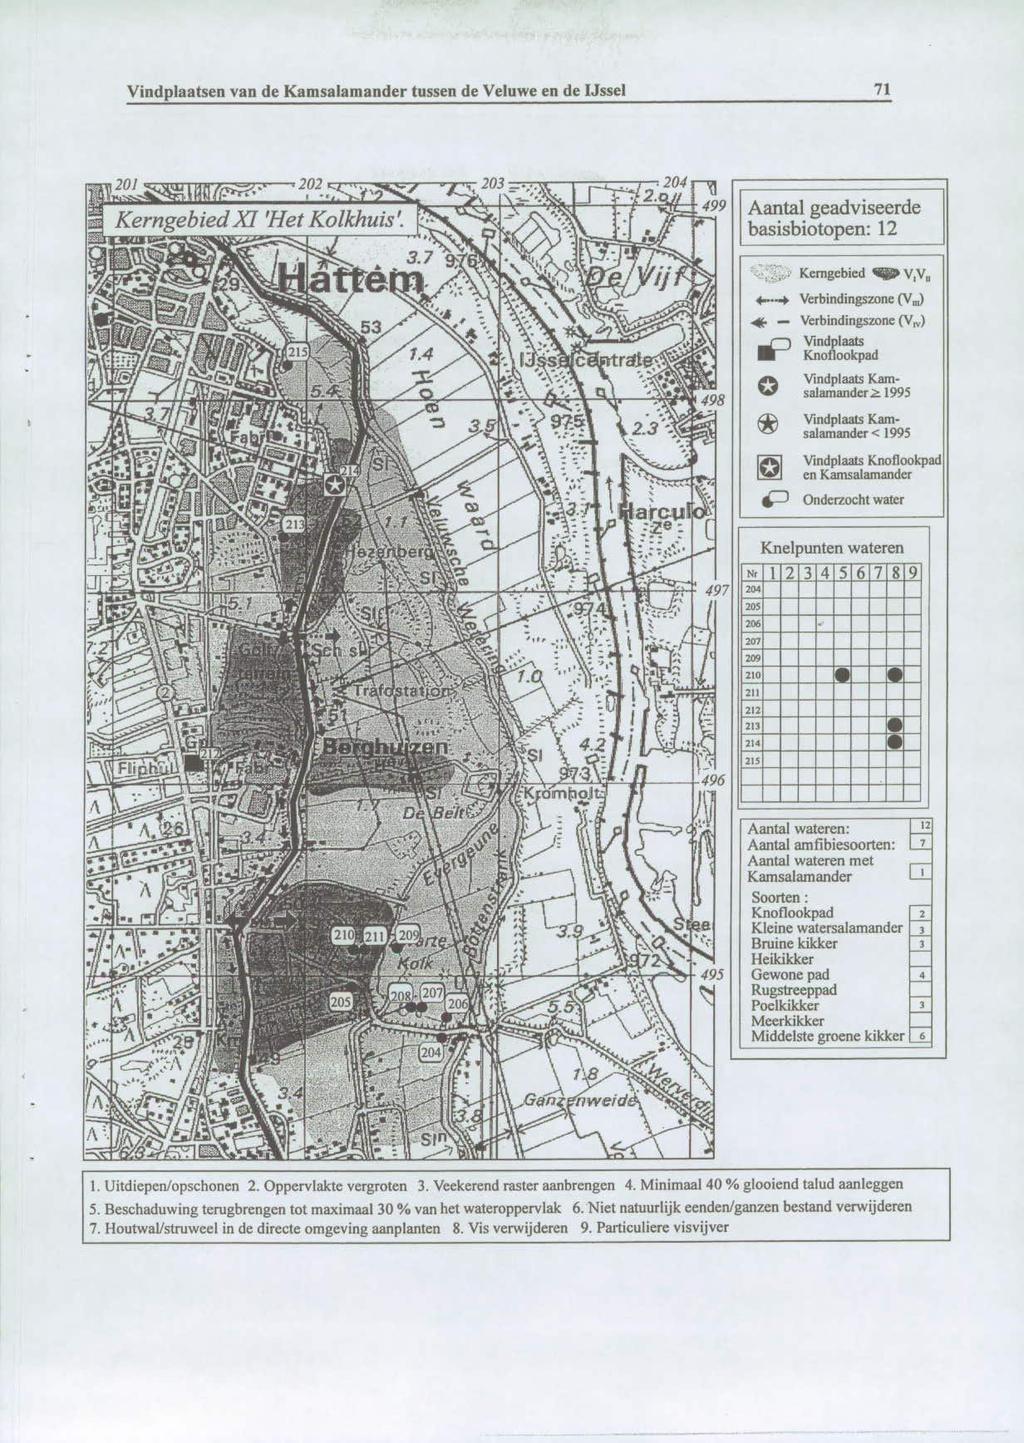 Vindplaatsen van de Kamsalamander tussen de Veluwe en de IJssel 7 Aantal geadviseerde basisbiotopen: 2 Kerngebied q» vv, Verbindingszone (V) * Verbindingszone (V.